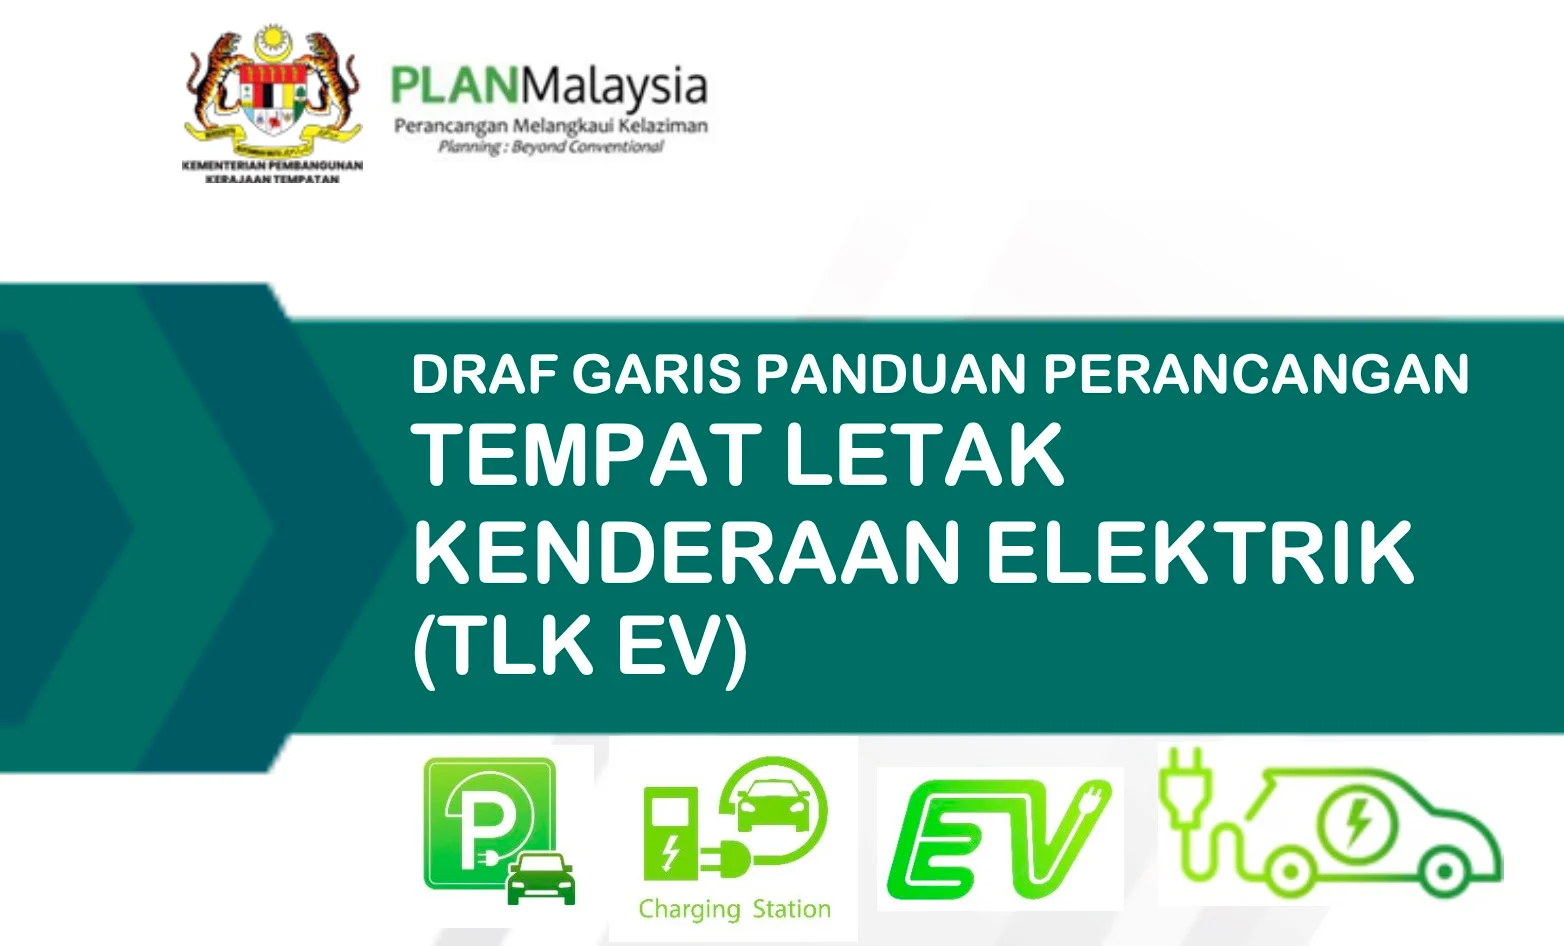 地方政府发展部旗下机构 Plan Malaysia 发布 EV 充电计划指南，禁止分层式物业停车场和地下停车场设 EV 充电器？